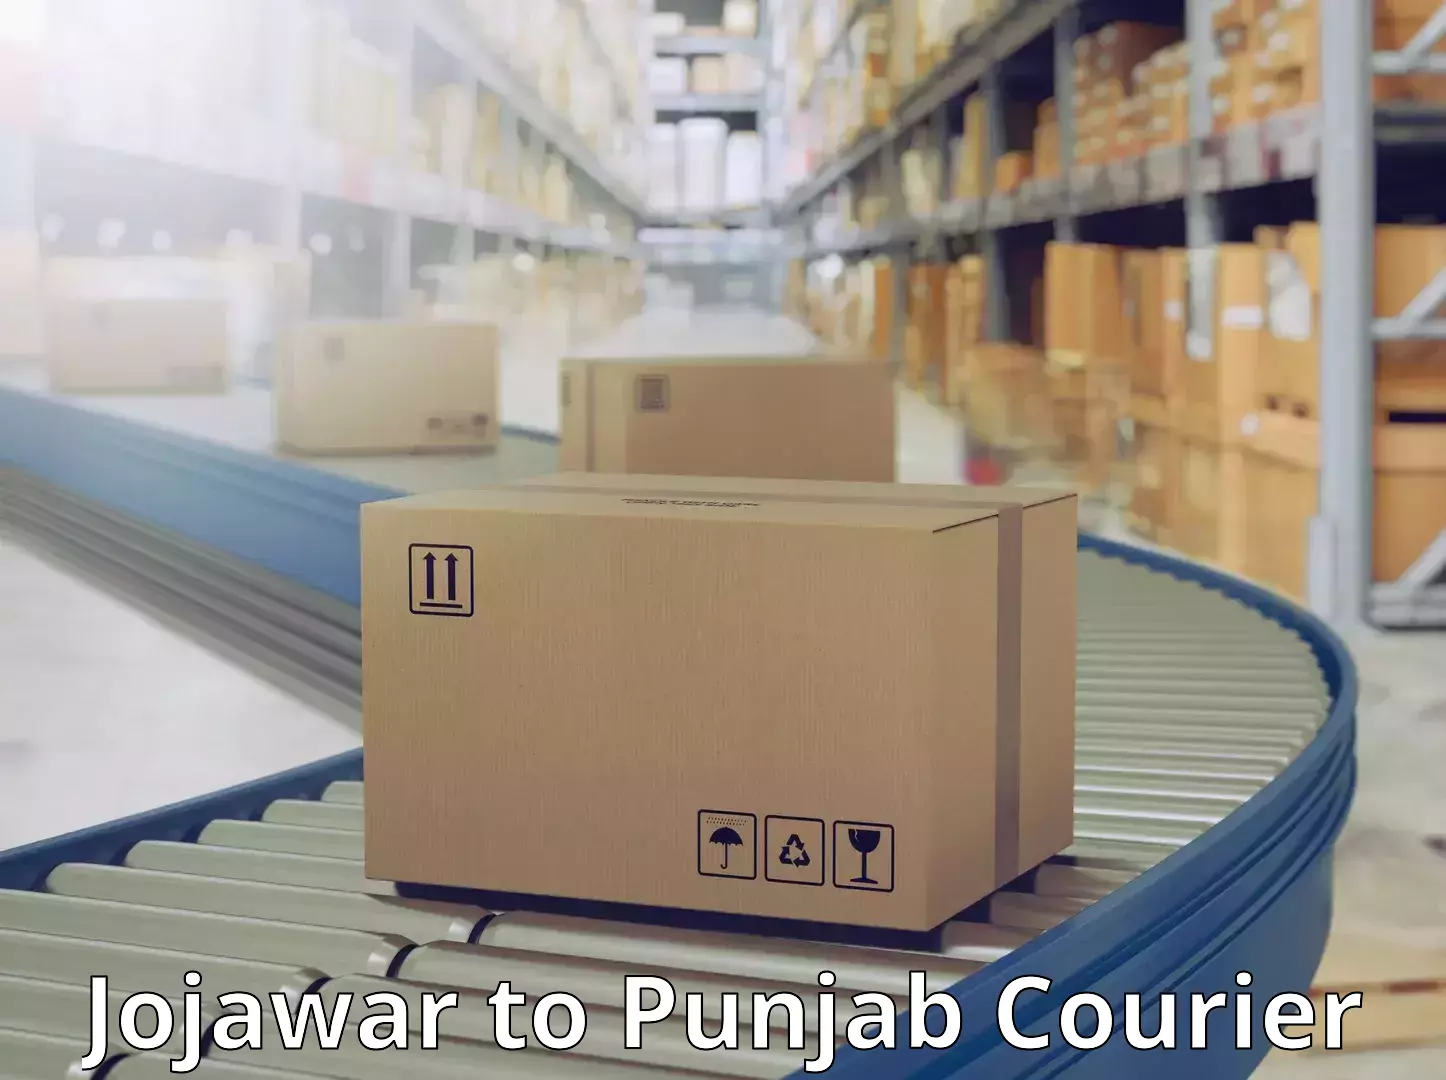 Tech-enabled shipping Jojawar to Punjab